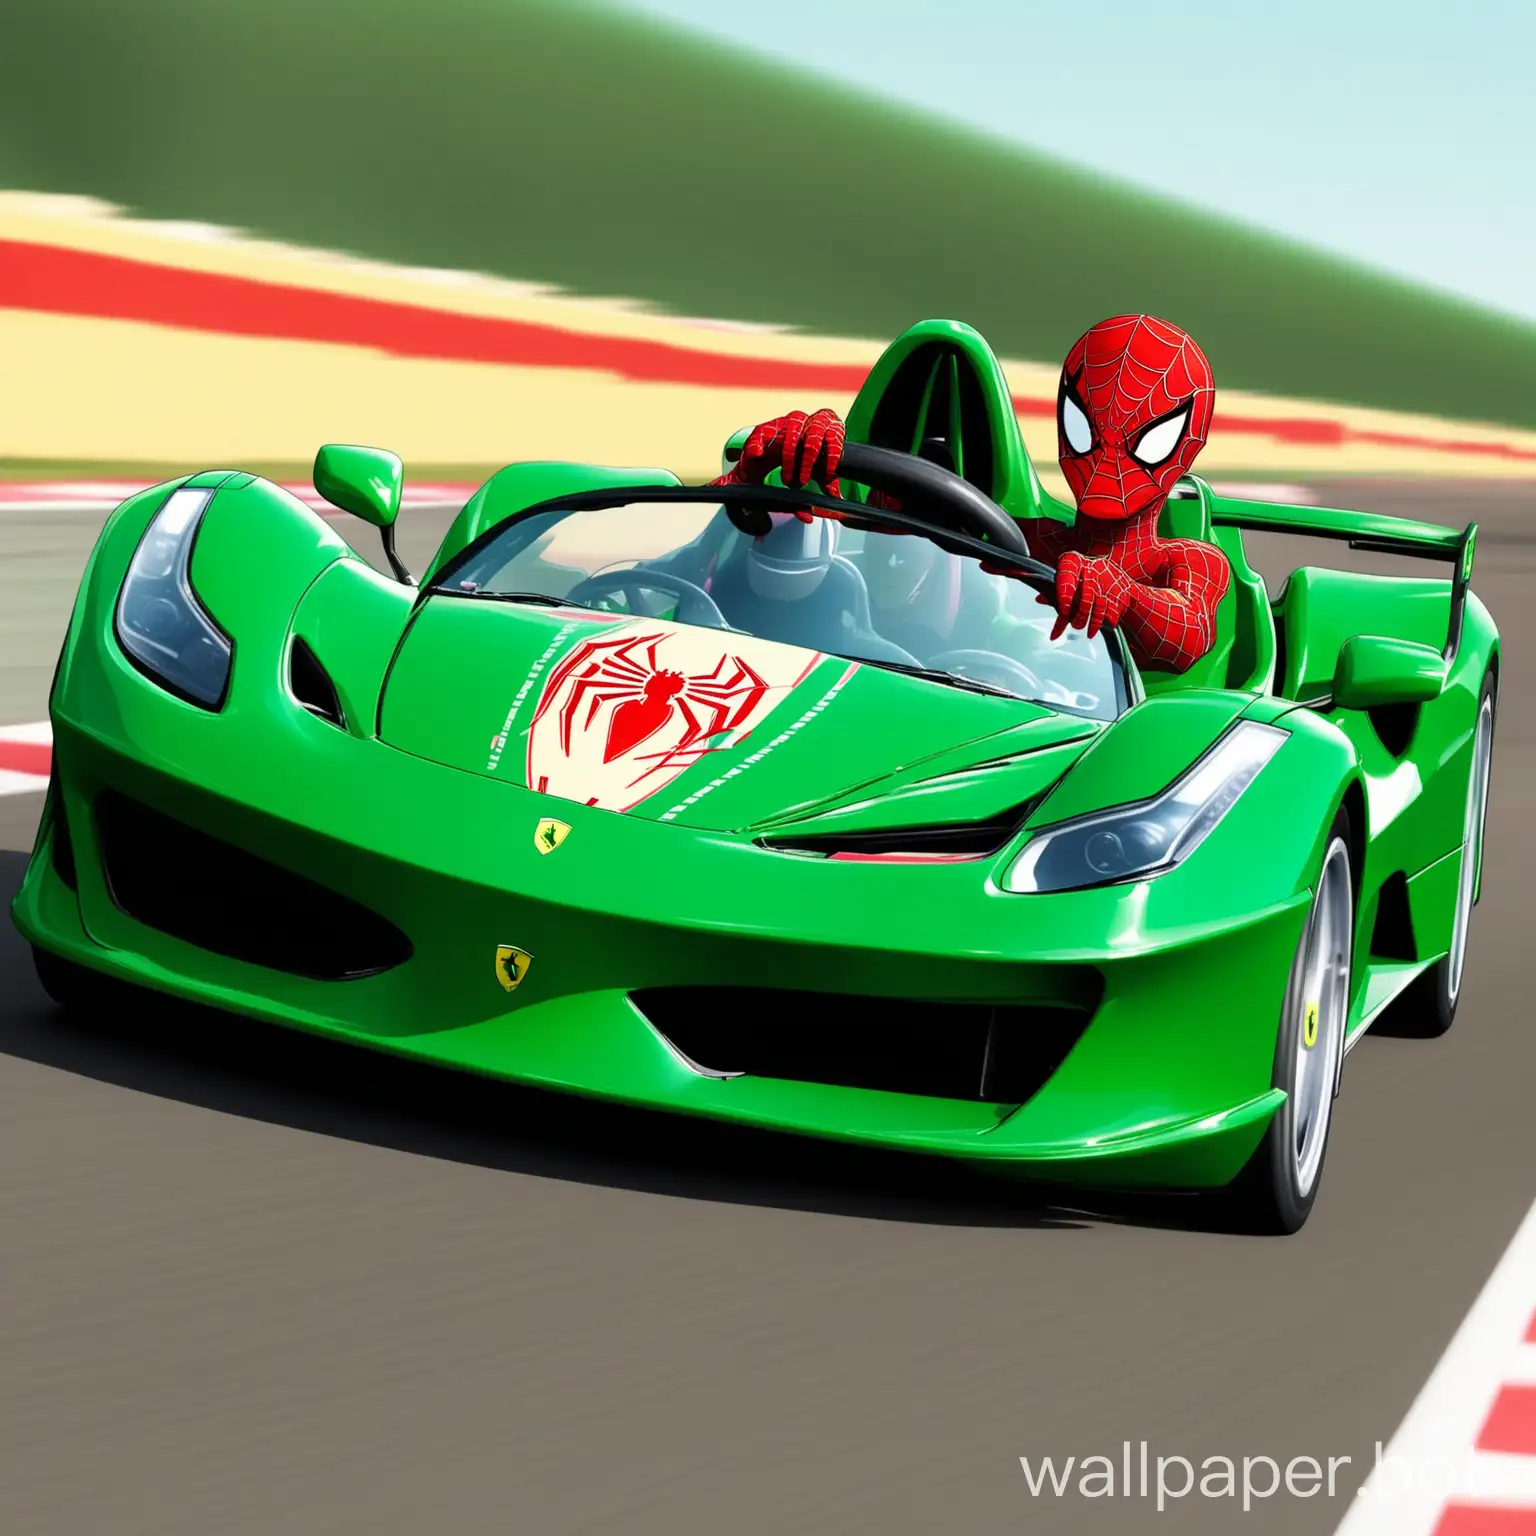 a big spidermann driving a green ferrari racecar